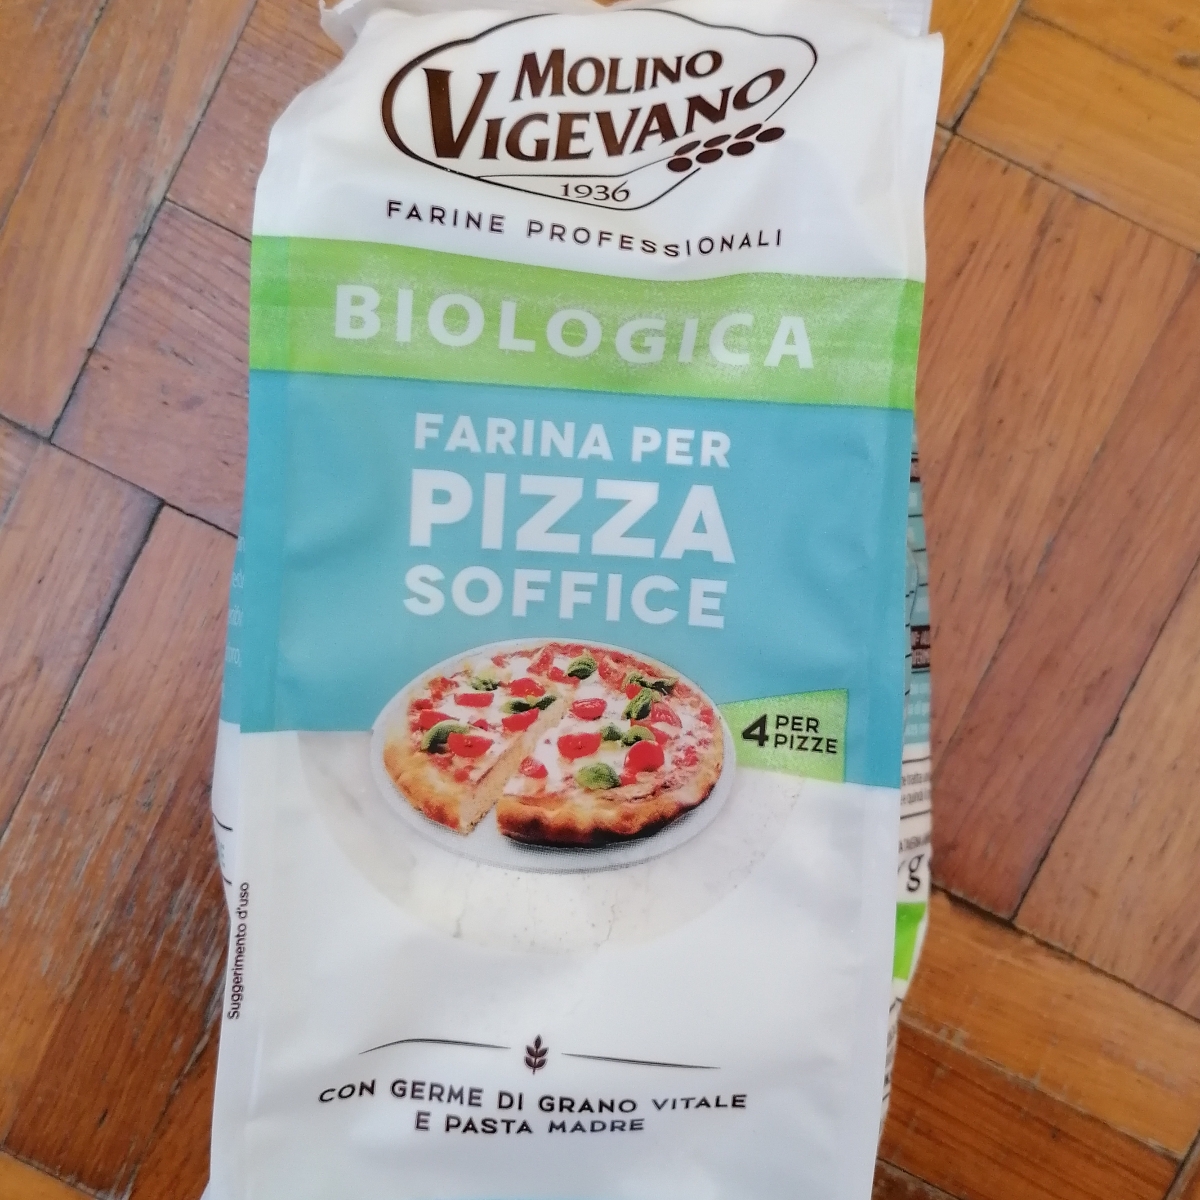 Molino Vigevano 1936 Farina per pizza Reviews